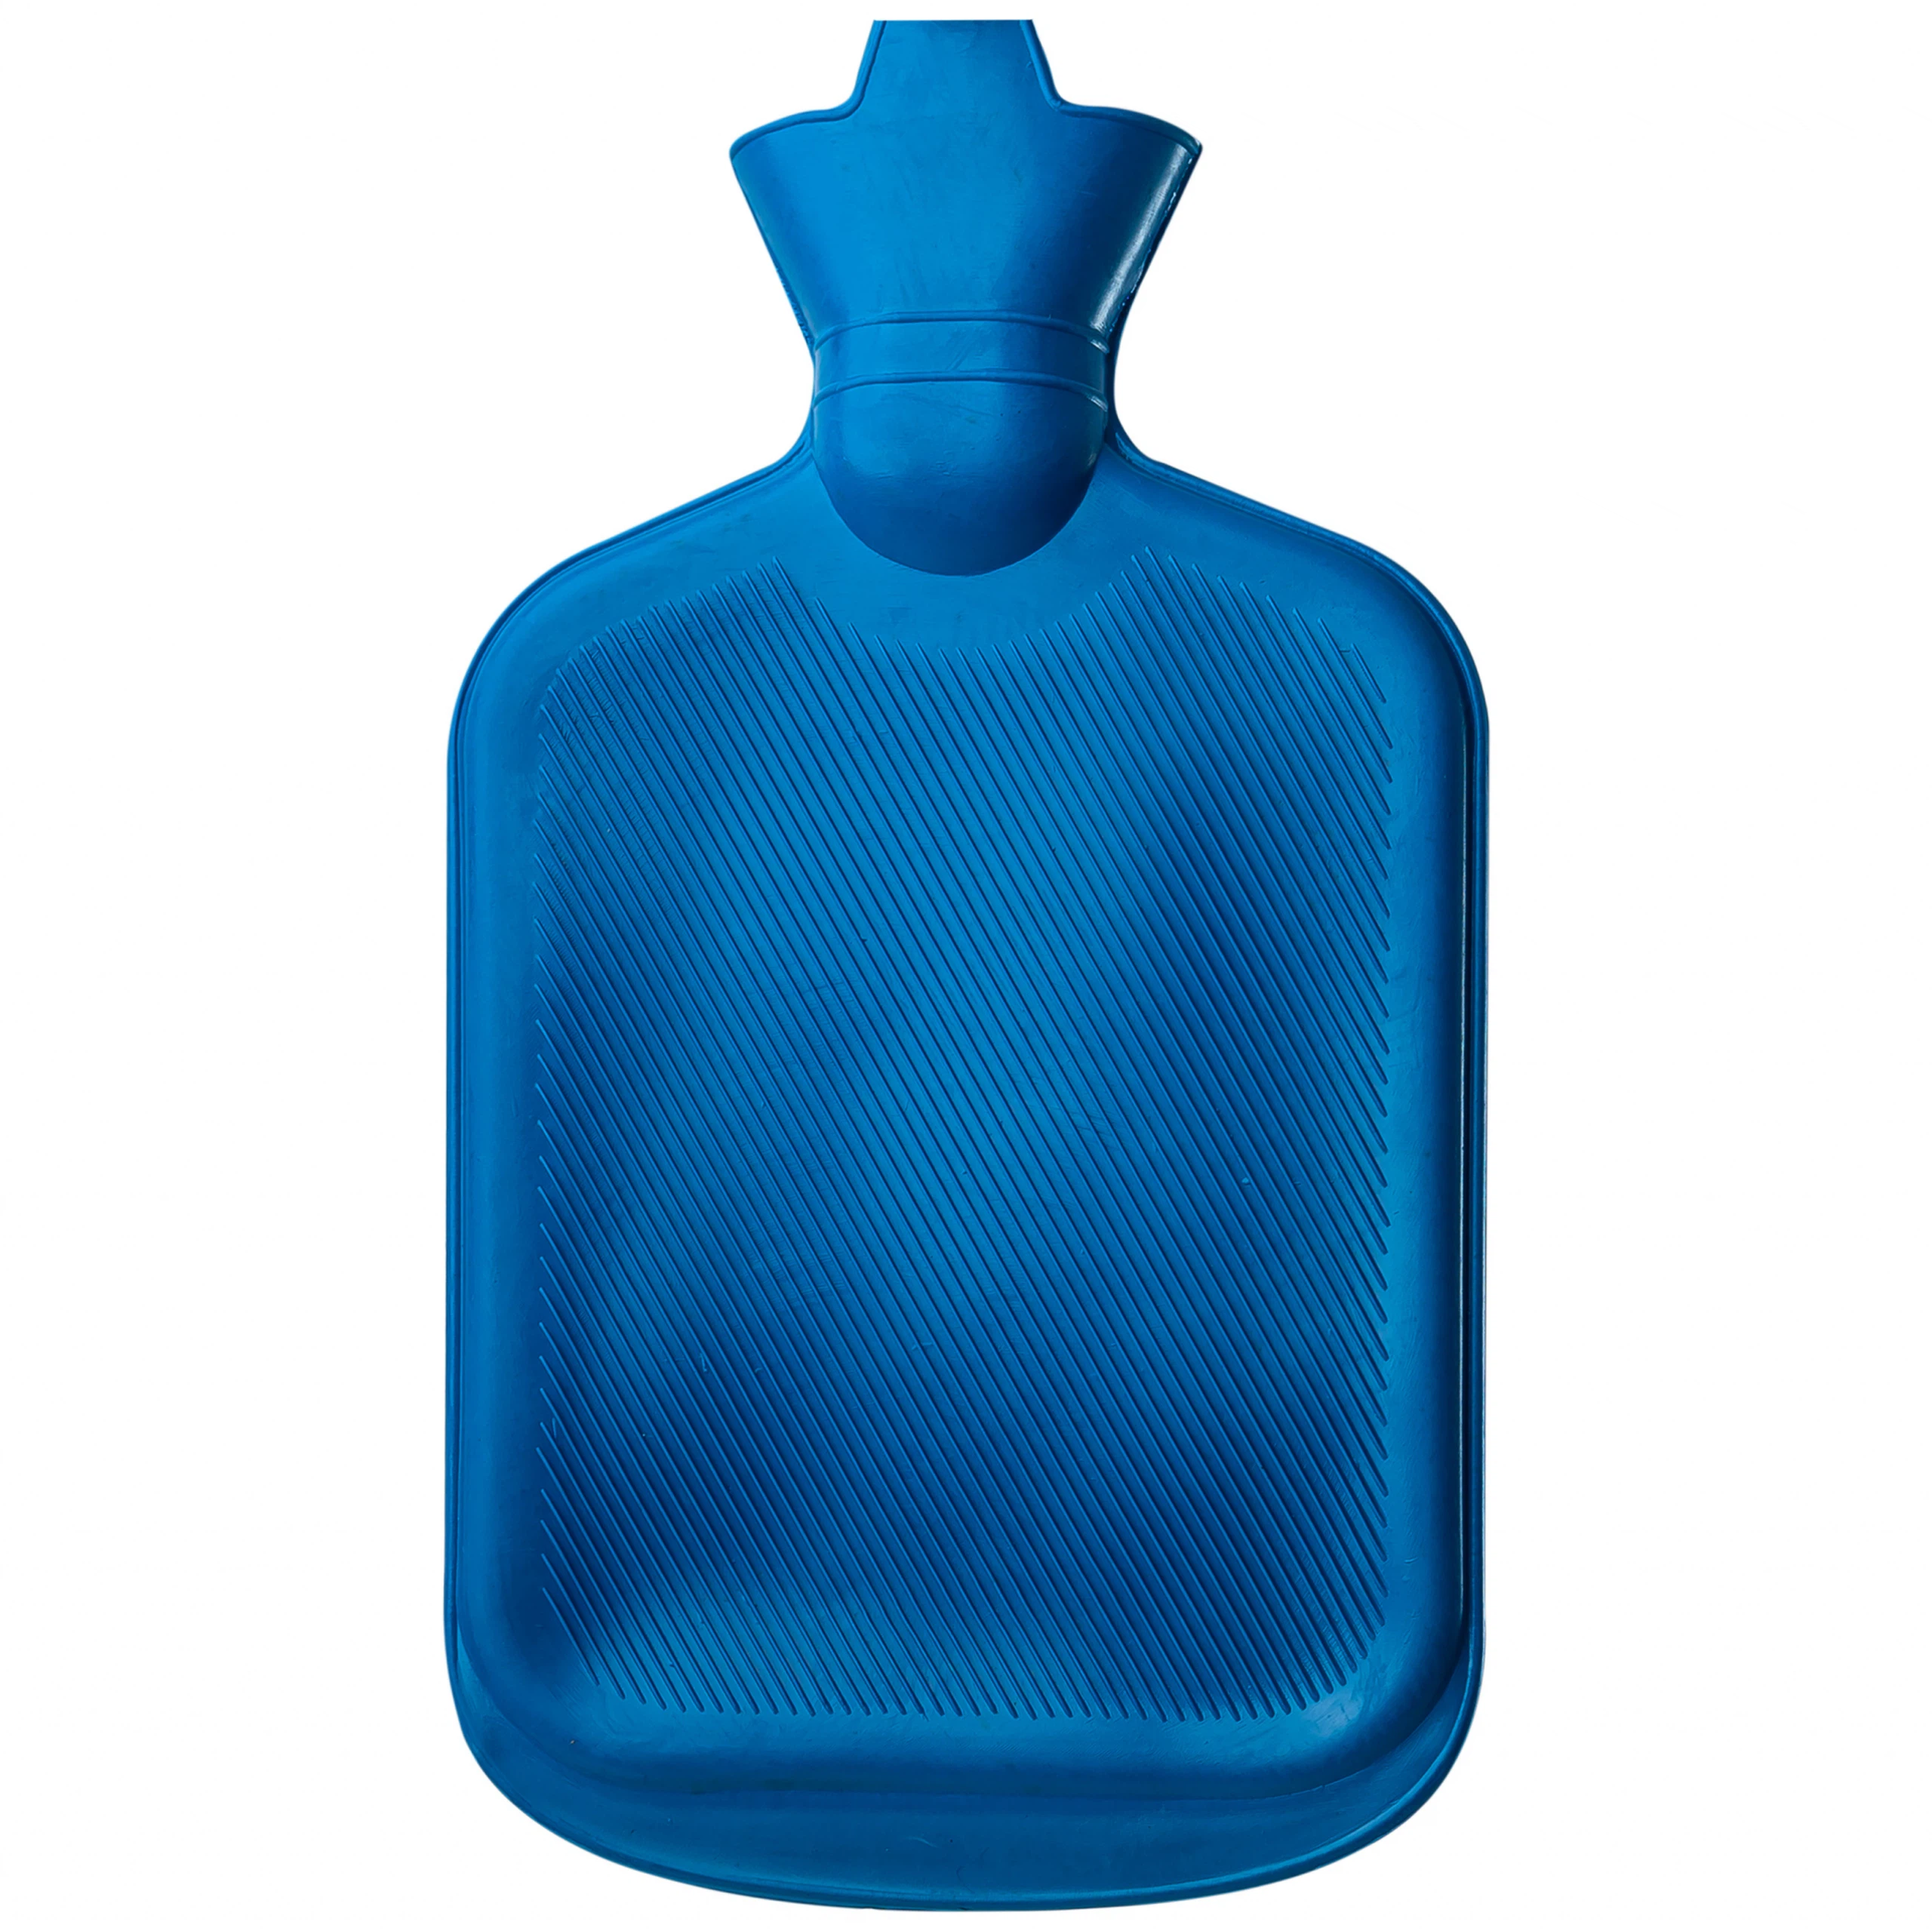 Túi chườm nóng y tế VGlove giúp chườm nóng lên các vùng đau trên cơ thể (1 cái)